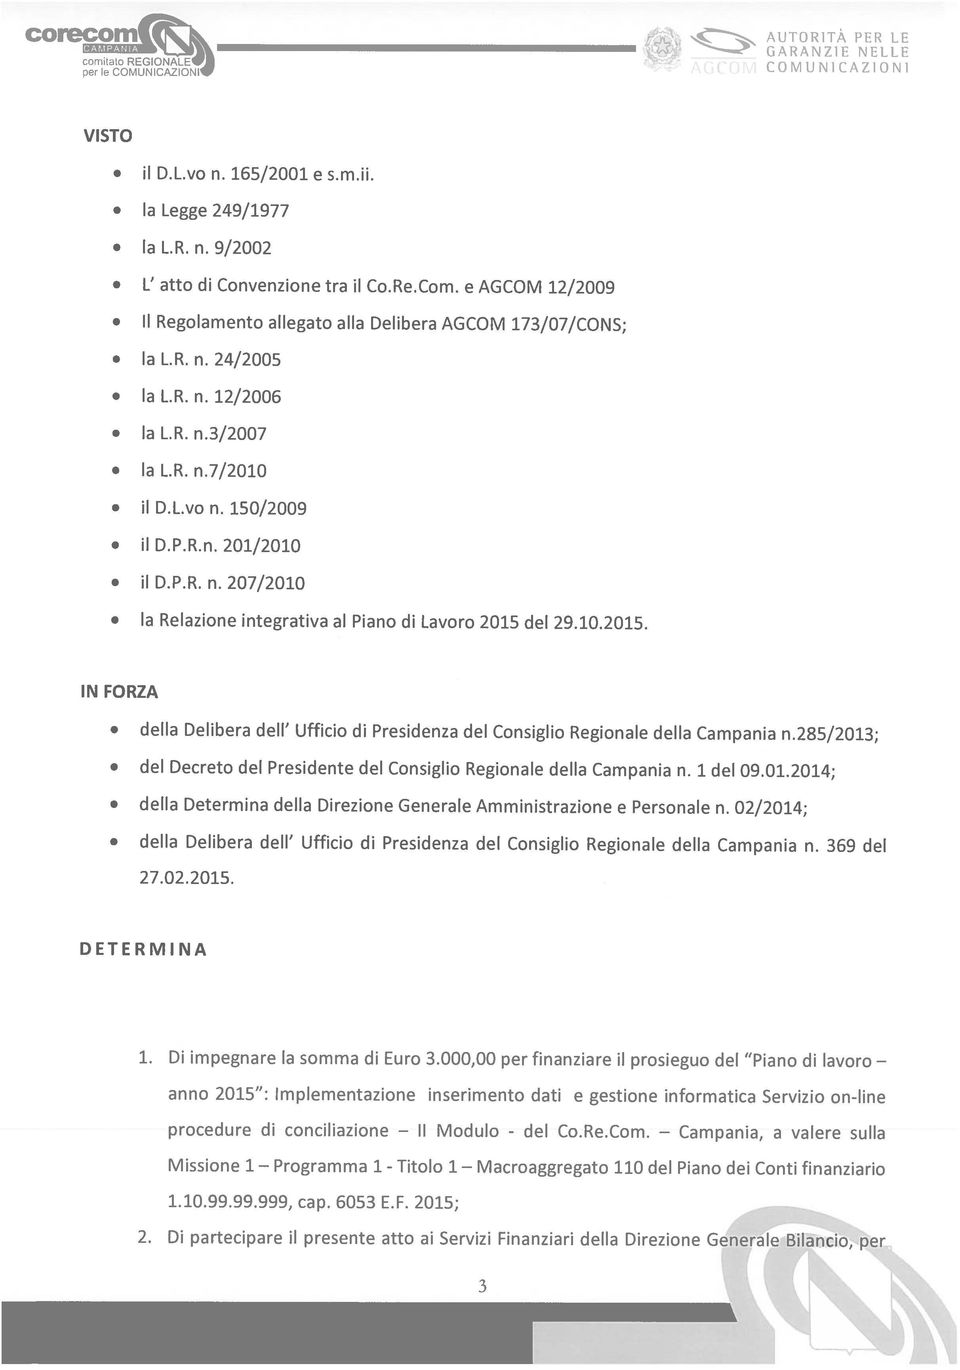 nanziari della Direzione Generale 1.10.99.99.999, cap. 6053 E.F. 2015; Missione 1 procedure di conciliazione anno 2015 : Implementazione inserimento dati e gestione informatica Servizio on-line 1.